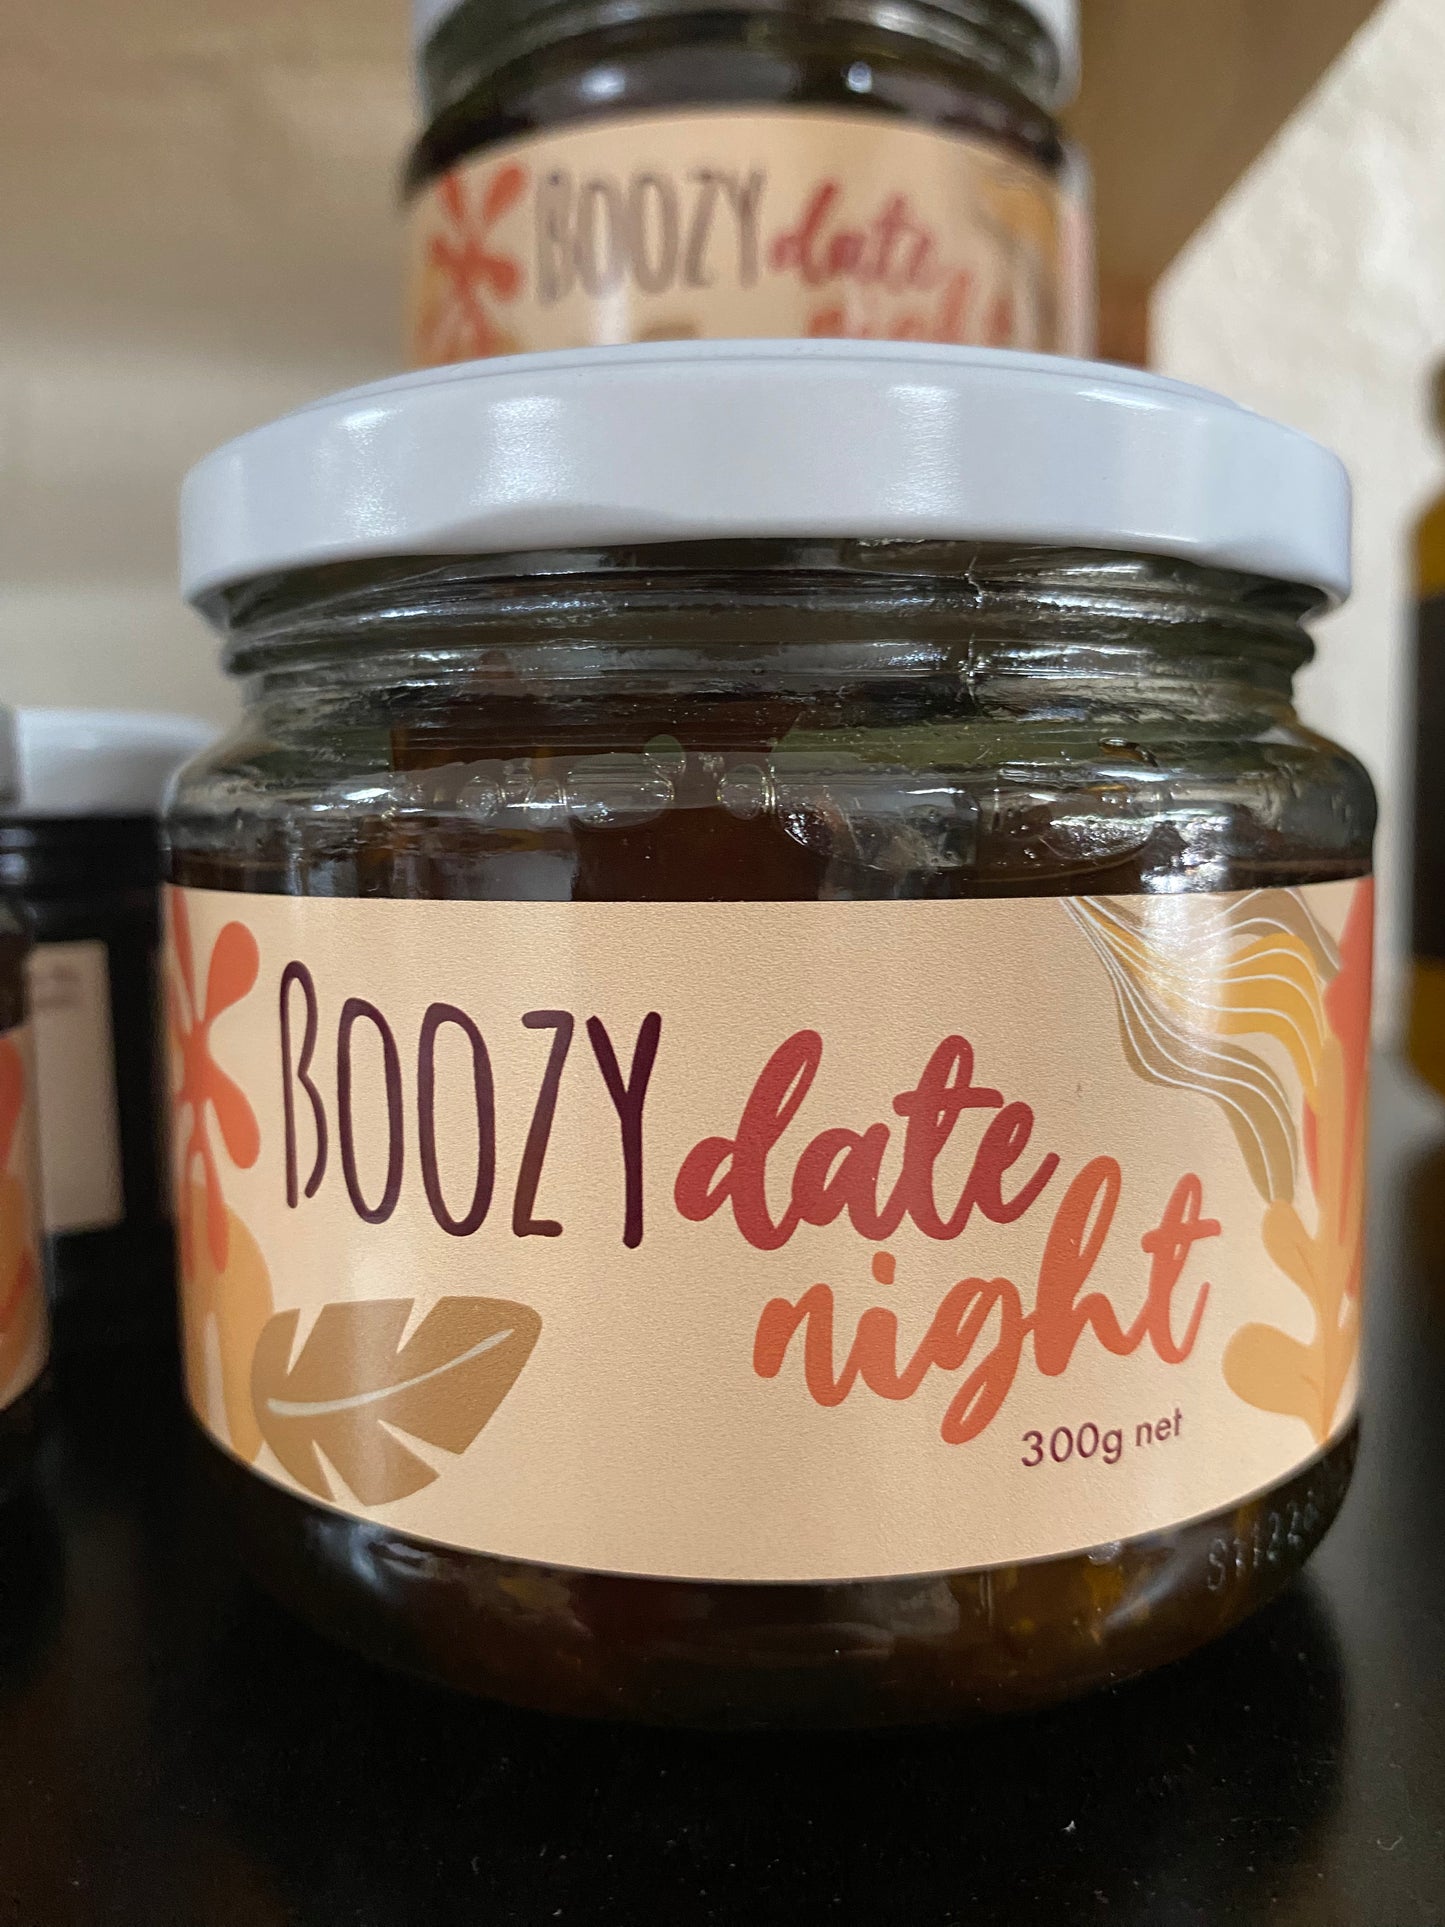 Boozy Date Night by Glen Gowrie Distillery